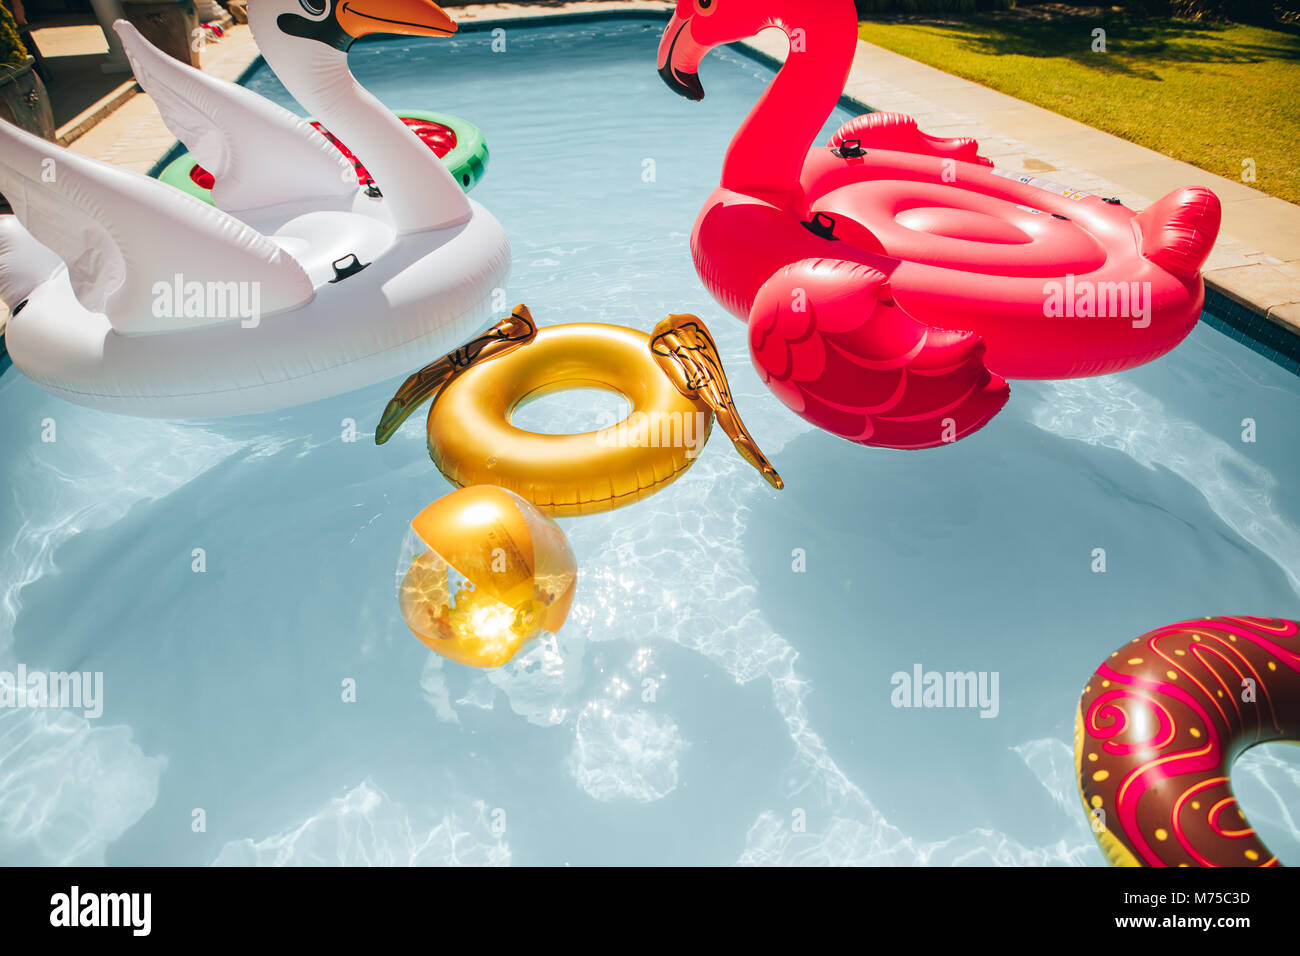 Gruppe von farbigen aufblasbare Spielzeuge Schwimmen im Schwimmbad im Sommer. Aufblasbare Swan, Flamingo, Ring und Kugel im Pool. Stockfoto